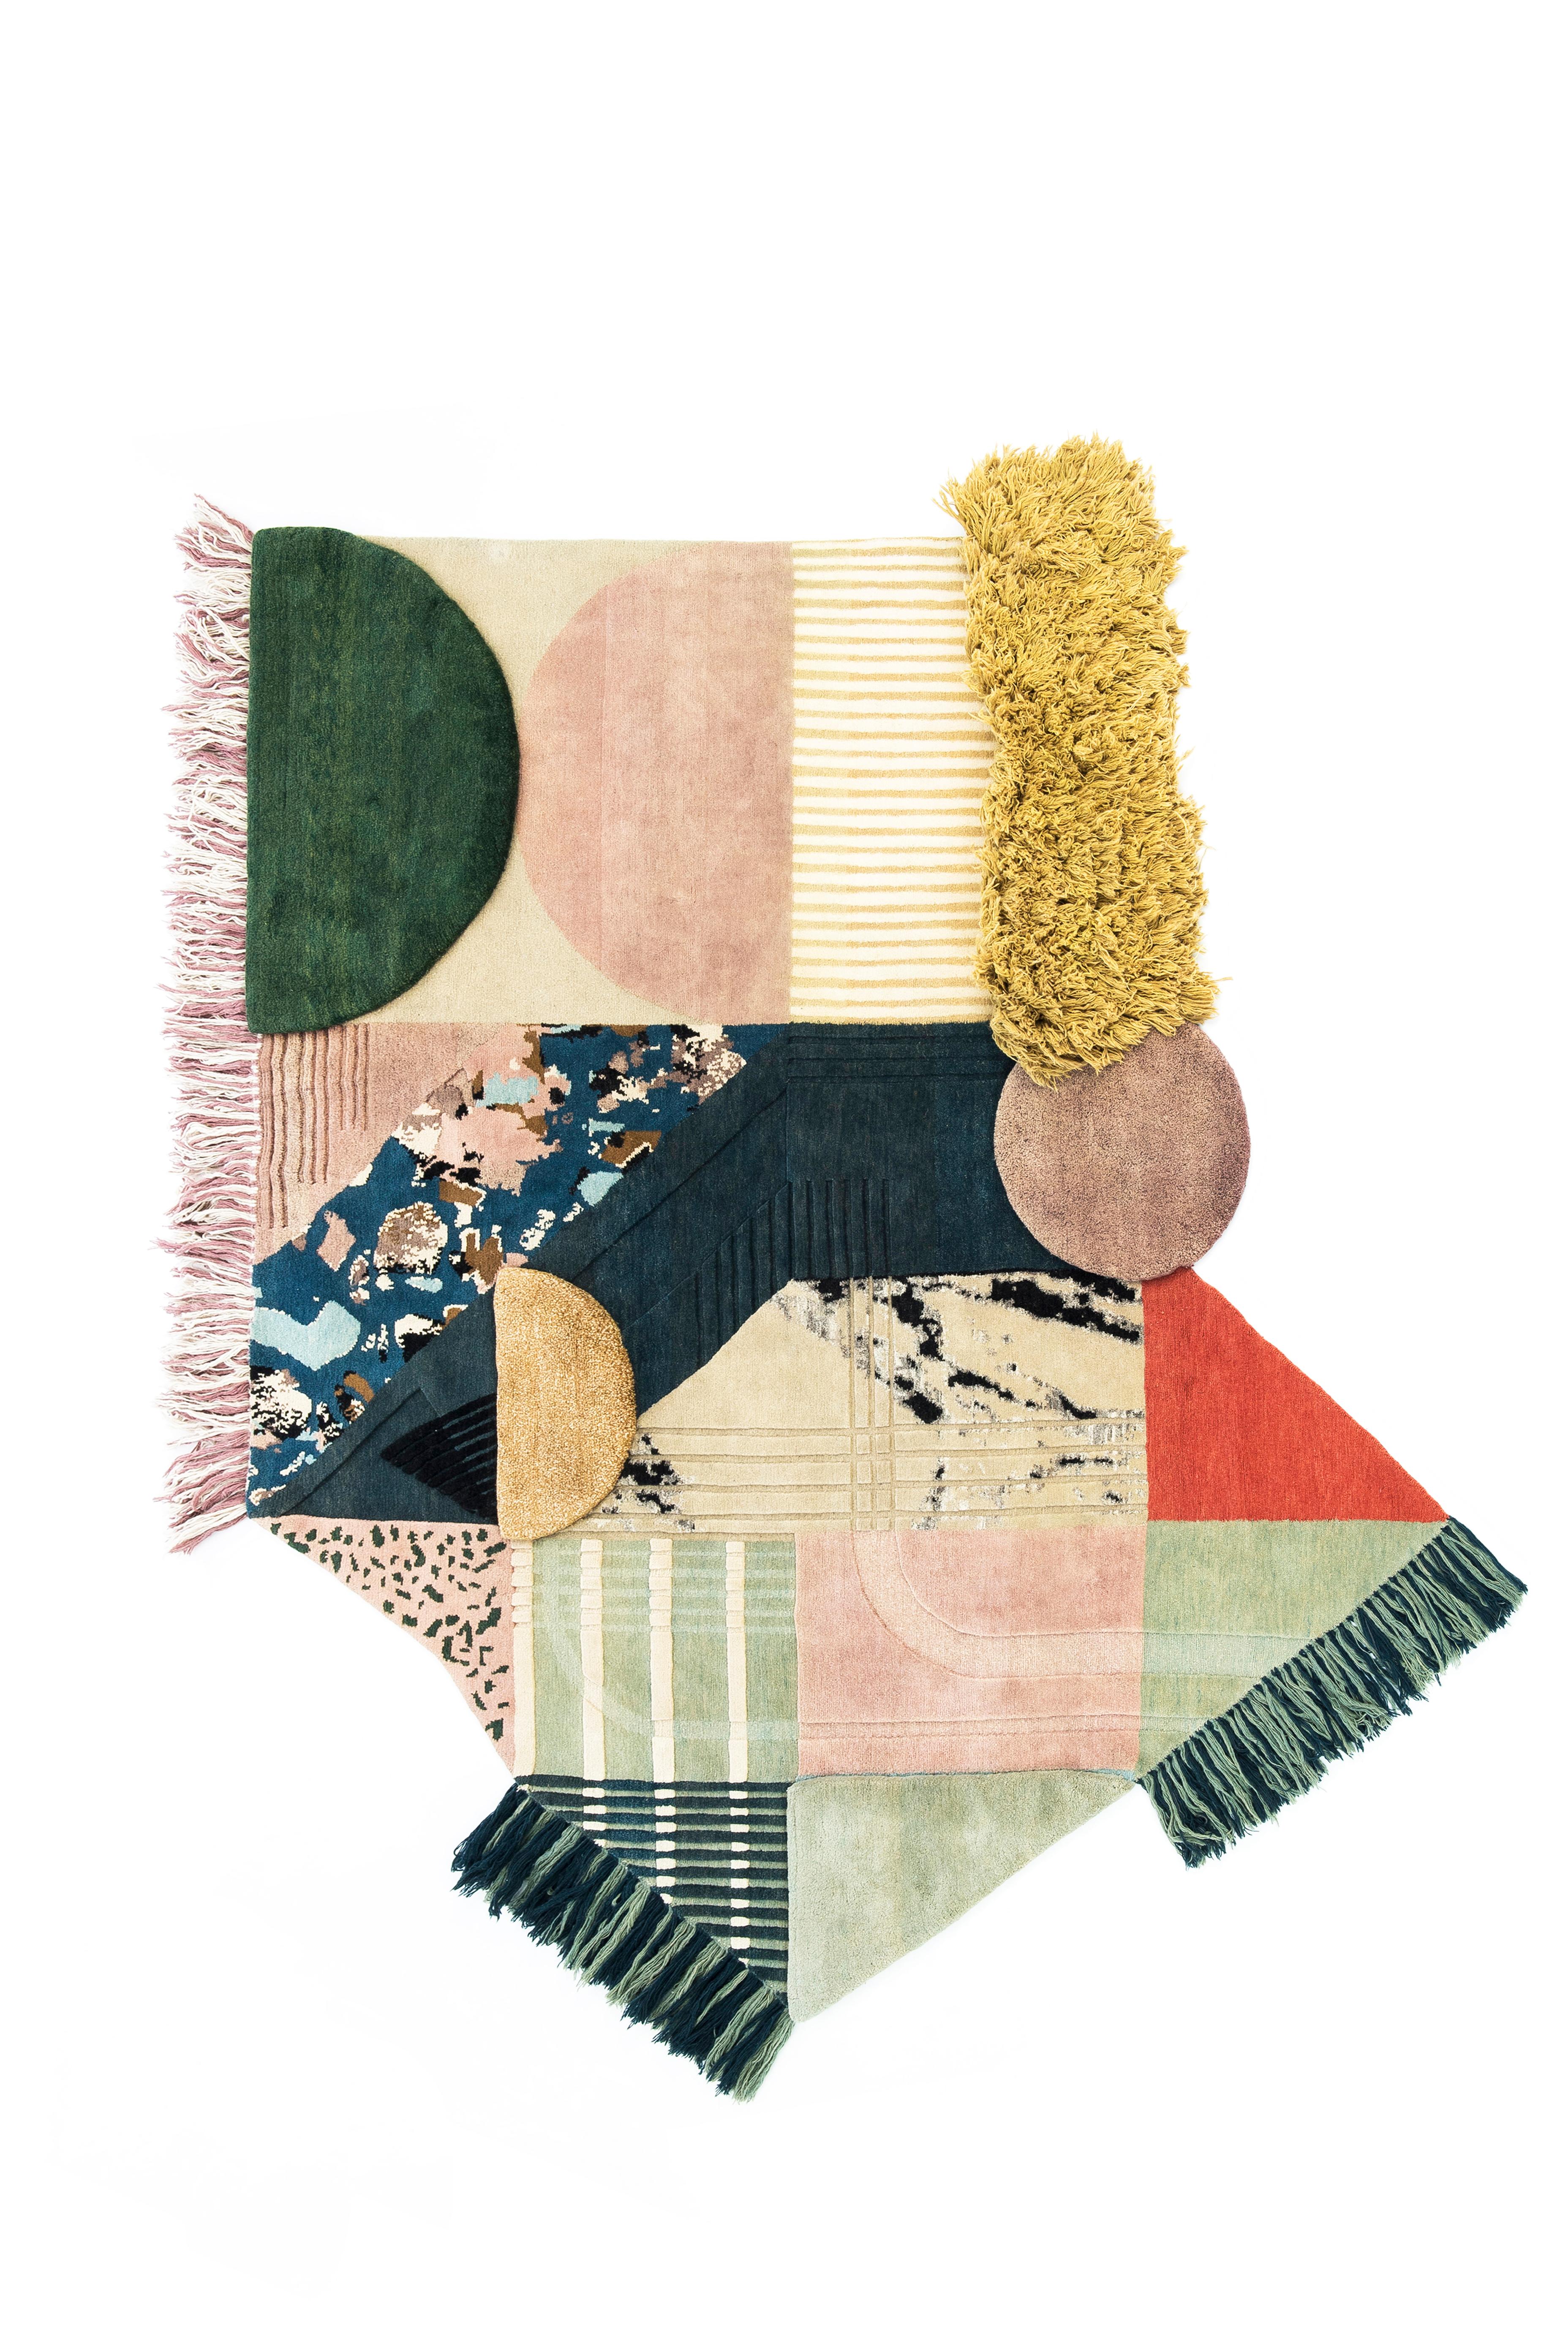 Tapis Medley noué à la main n° 256 de Lyk Carpet
Dimensions : L 250 x L 280 cm : L 250 x L 280 cm.
MATERIAL : 100% laine des hauts plateaux tibétains, nouvelle pure laine peignée et filée à la main, laine naturelle teintée dans la masse, 100 nœuds